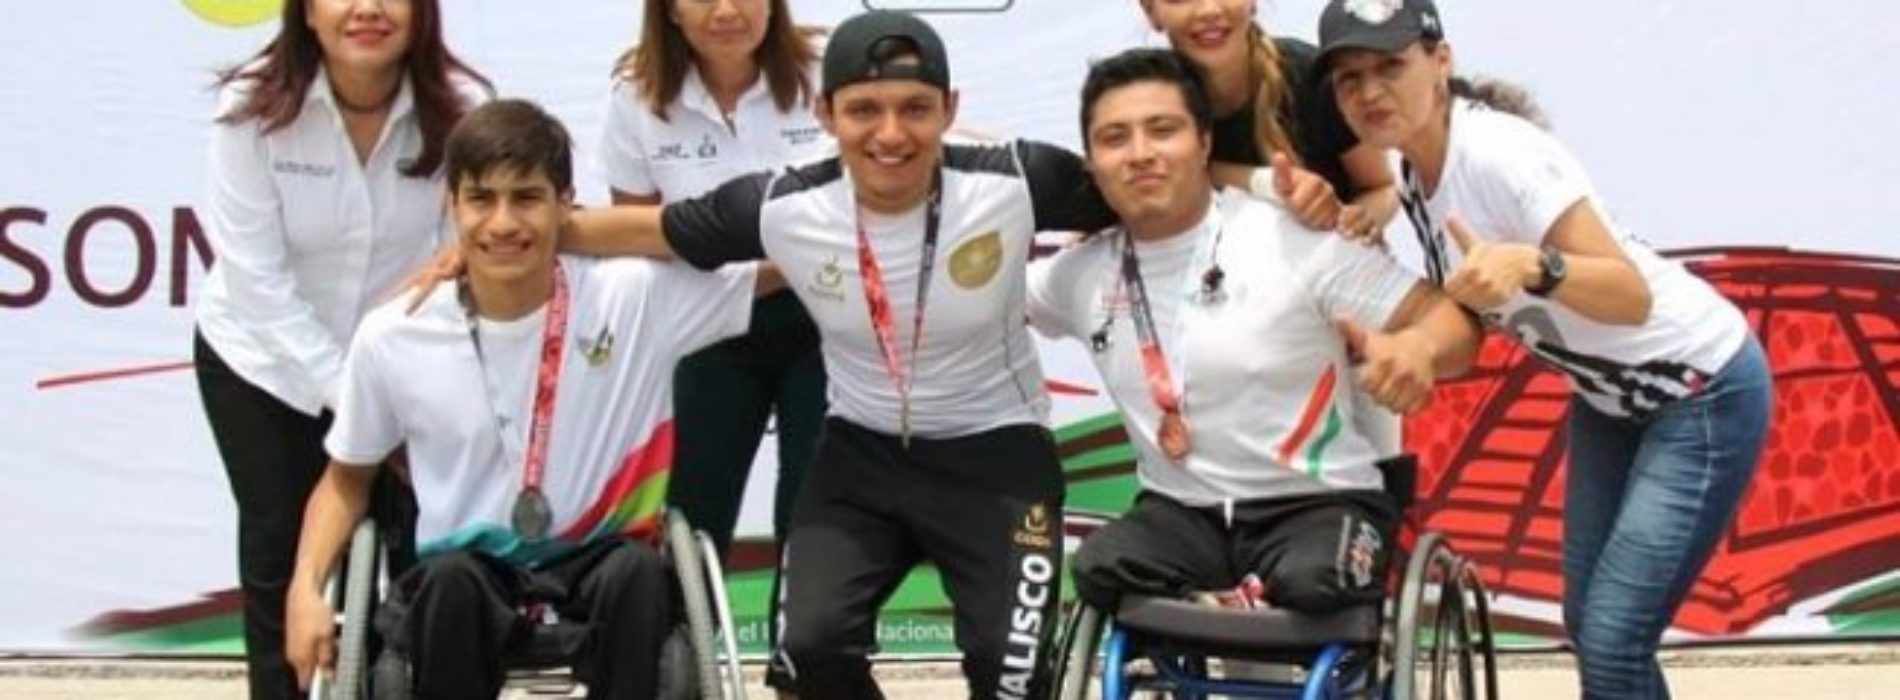 Ivette Morán de Murat acompaña a la Delegación Oaxaqueña en
la Paralimpiada Nacional 2018 en Colima